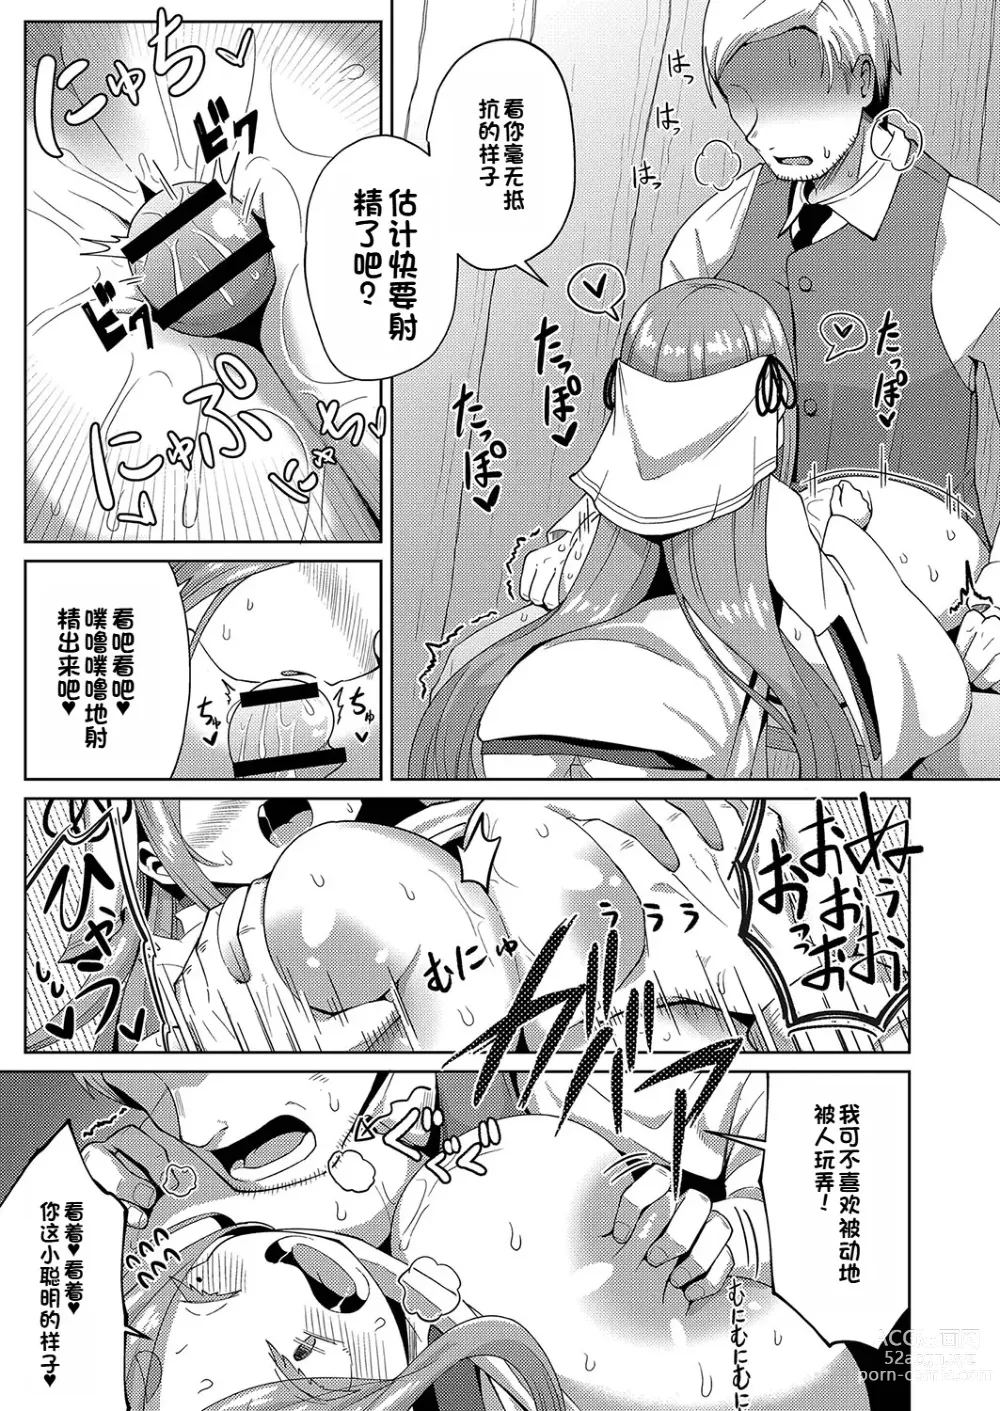 Page 19 of manga Yui